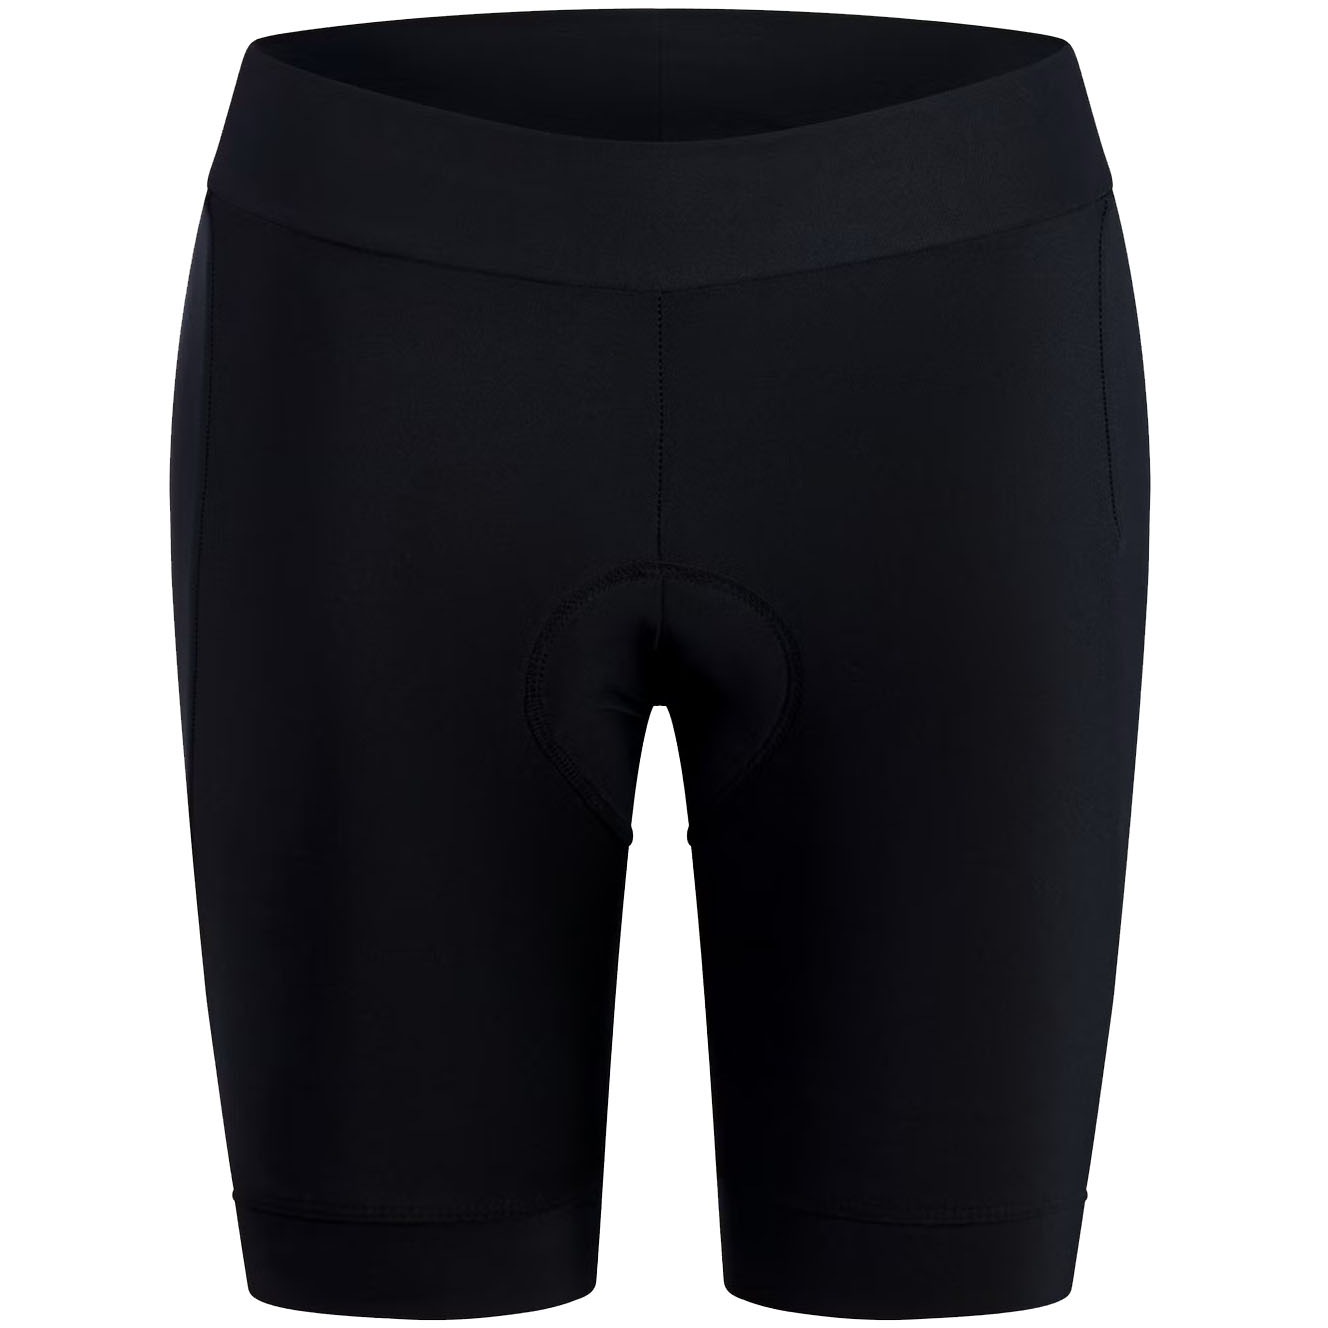 Produktbild von Endura Xtract II Gel Shorts Damen - schwarz